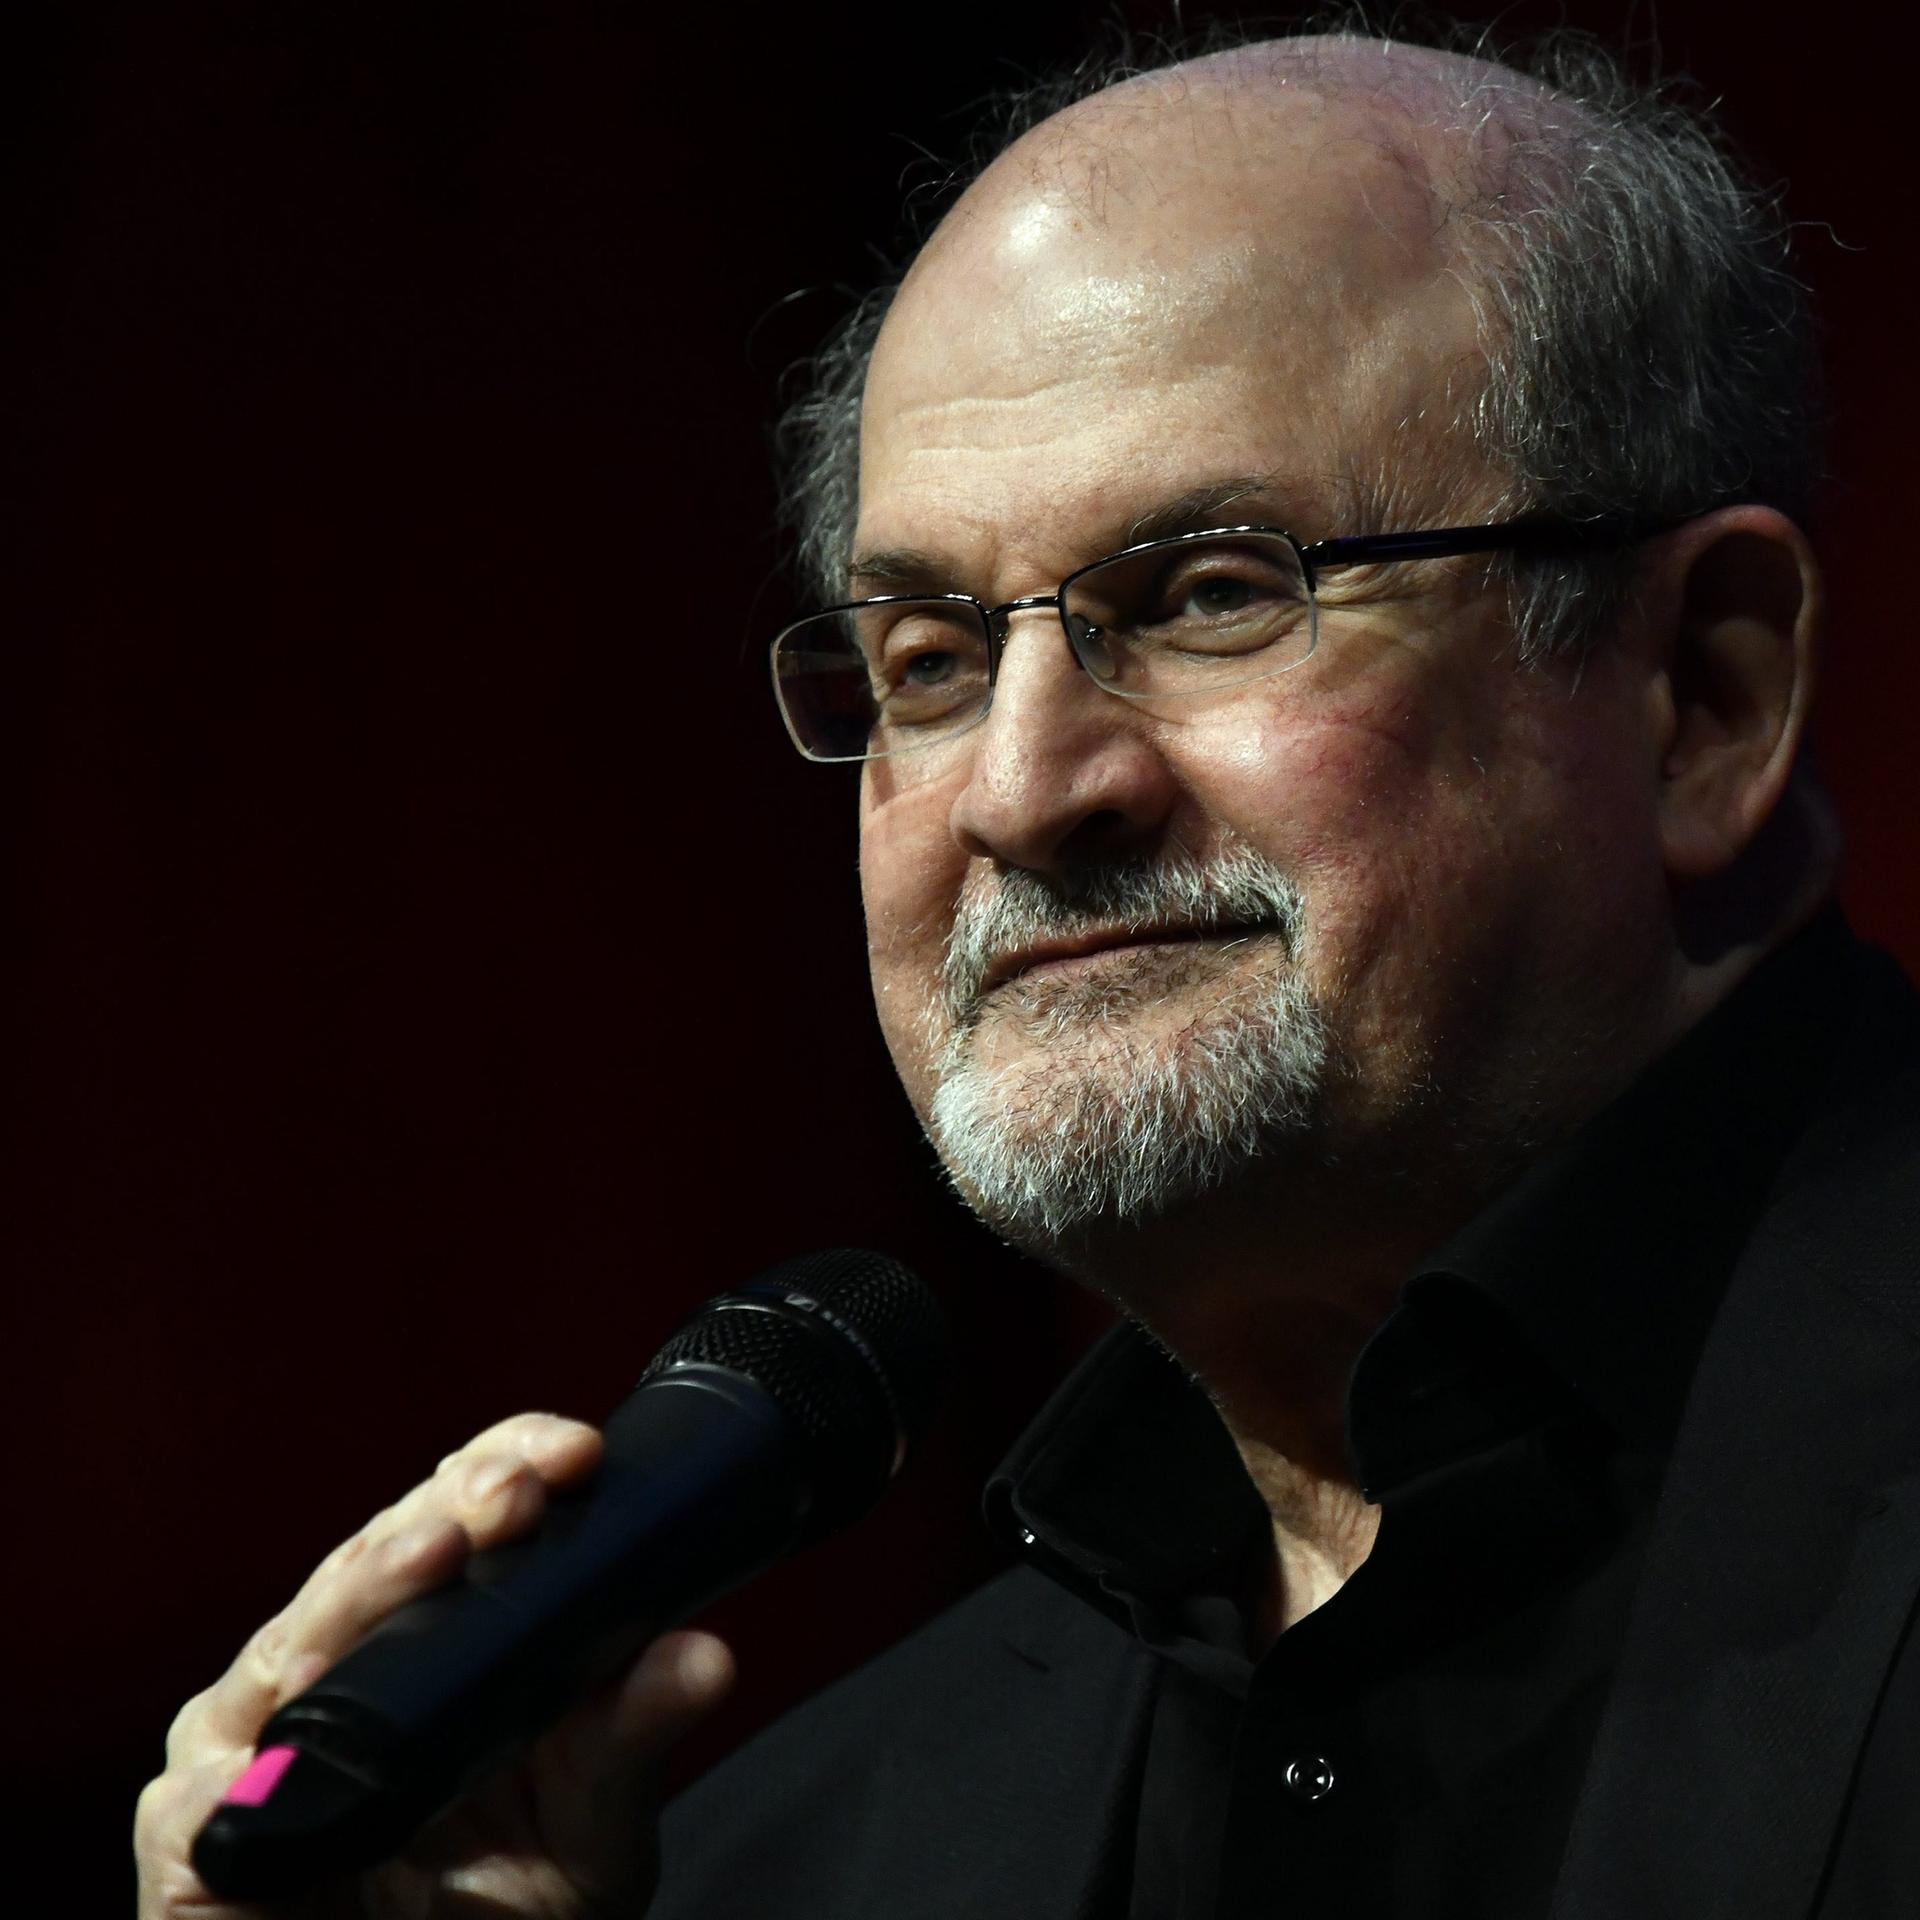 Solidaritätslesung für Salman Rushdie in Berlin – Seinen Ängsten nicht unterworfen